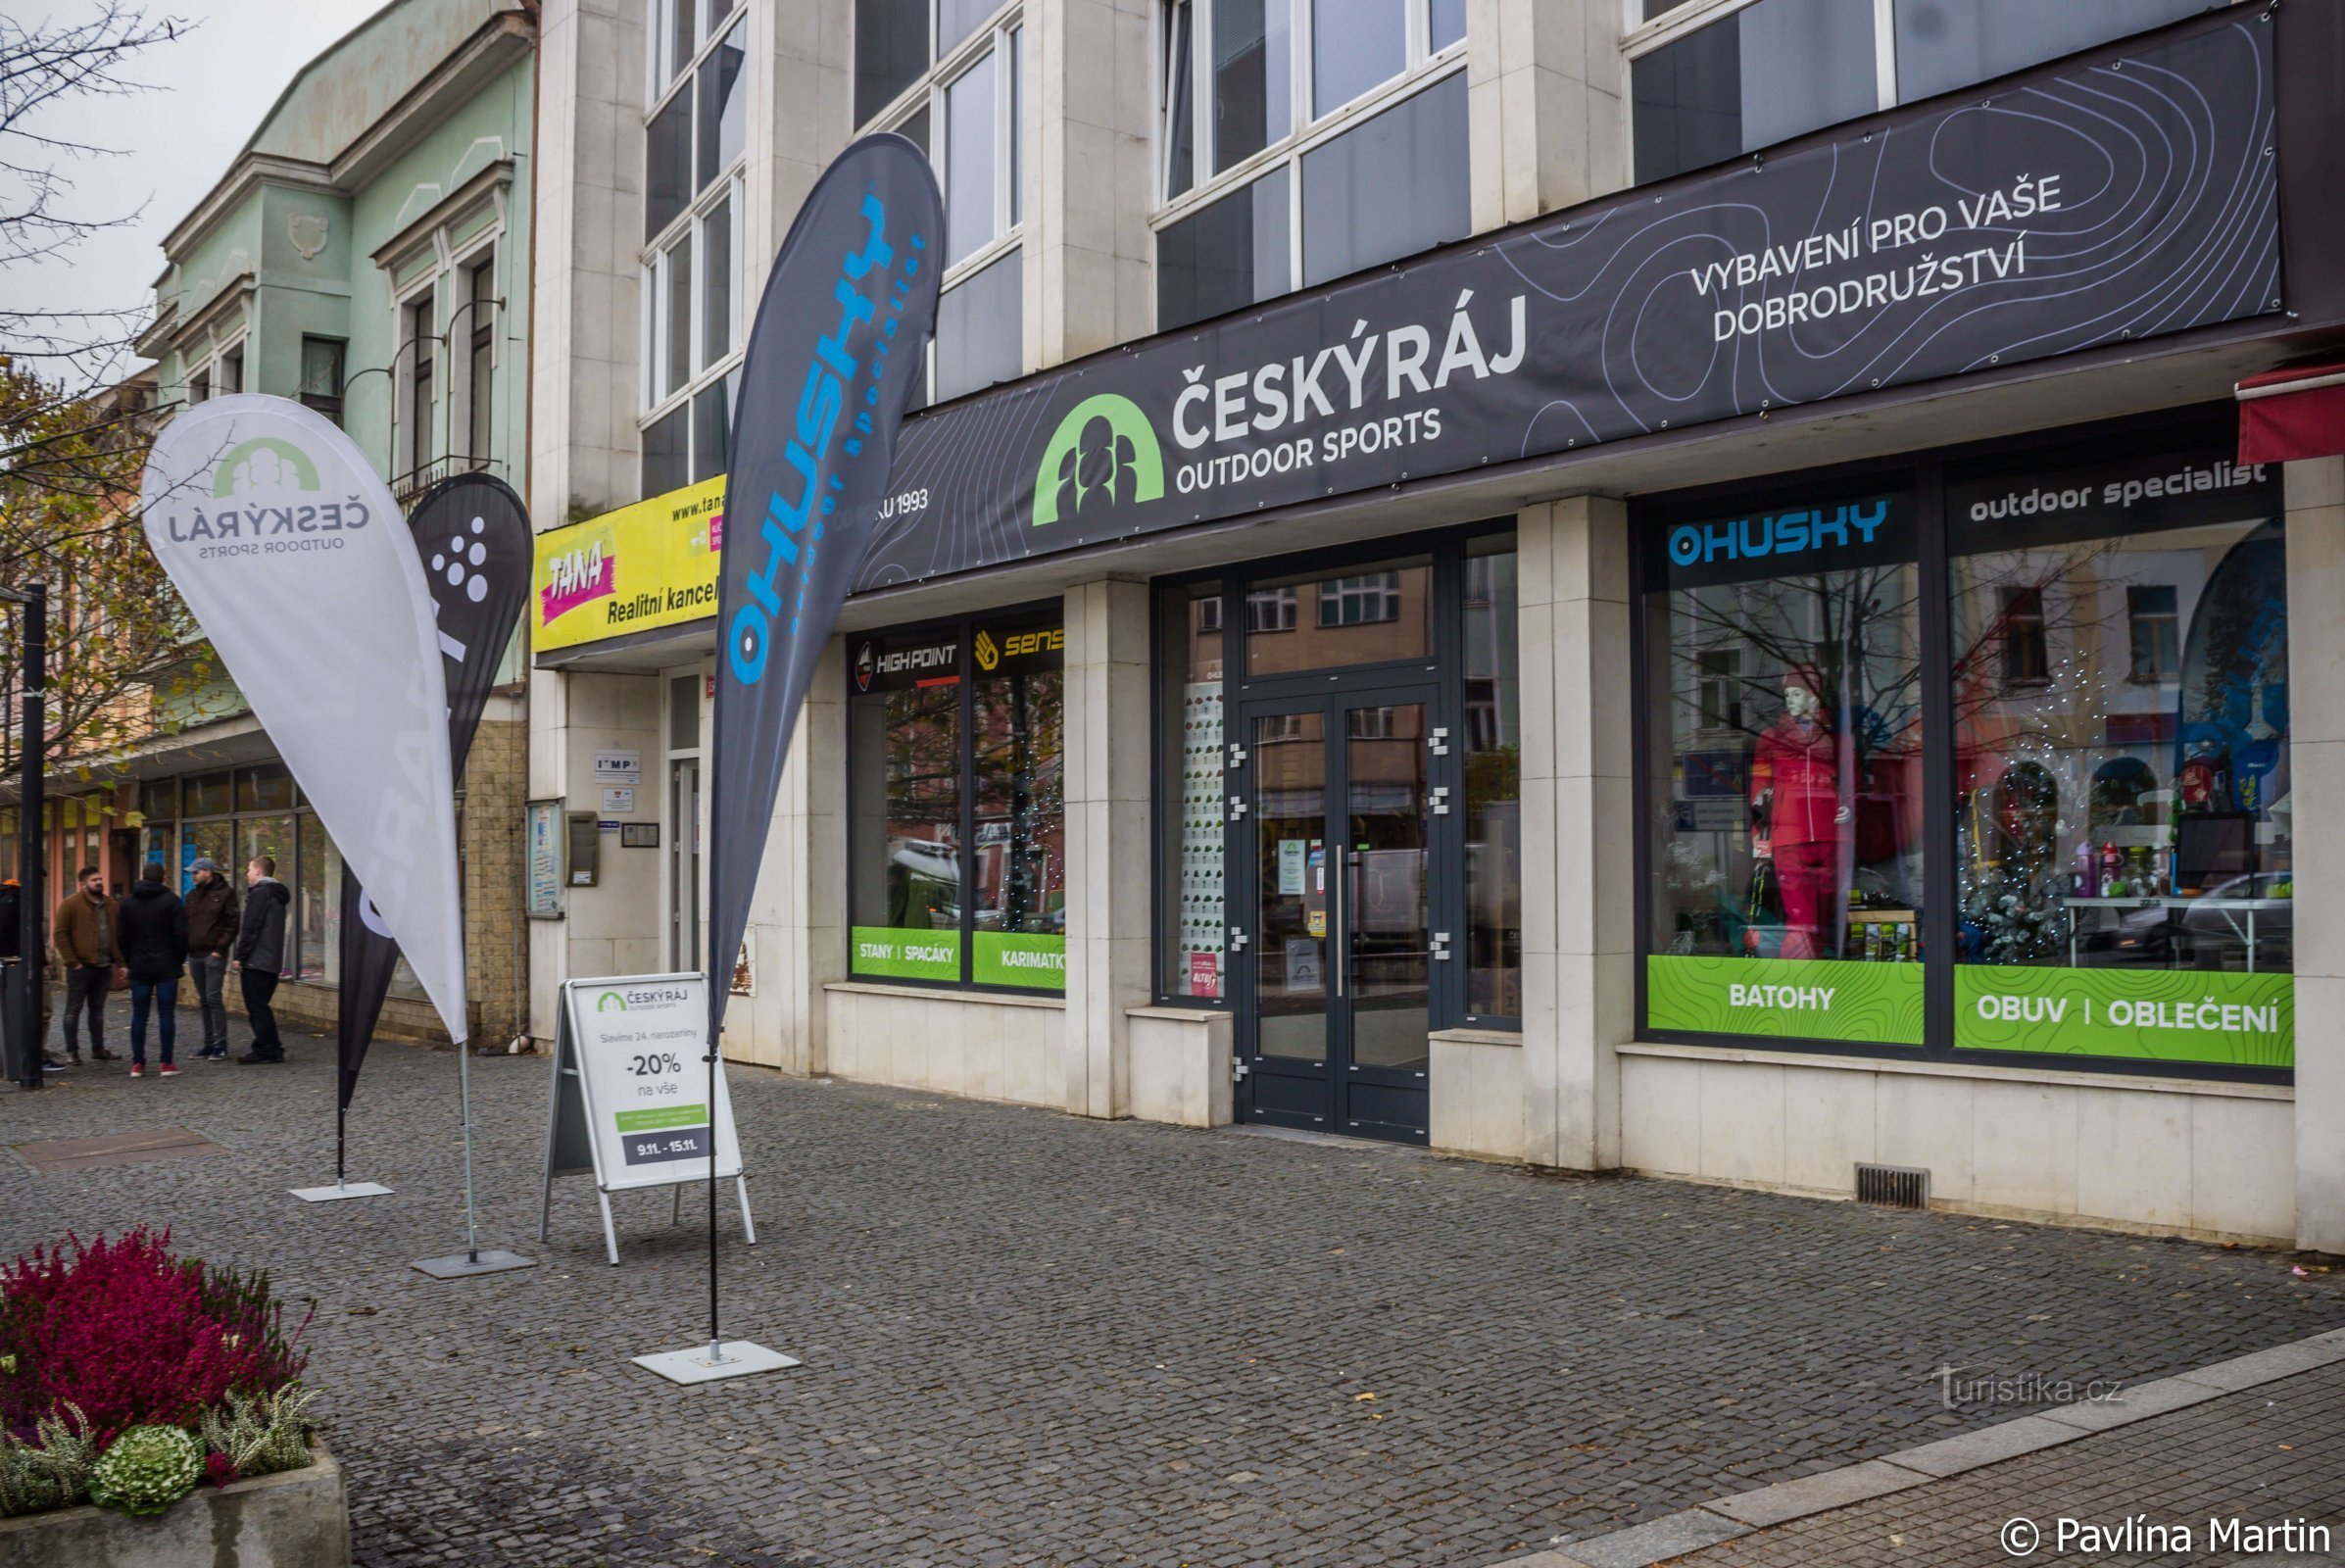 Der Outdoor-Shop Český raj feiert sein 25-jähriges Bestehen und Sie können mit 20 % Rabatt auf alles mitfeiern